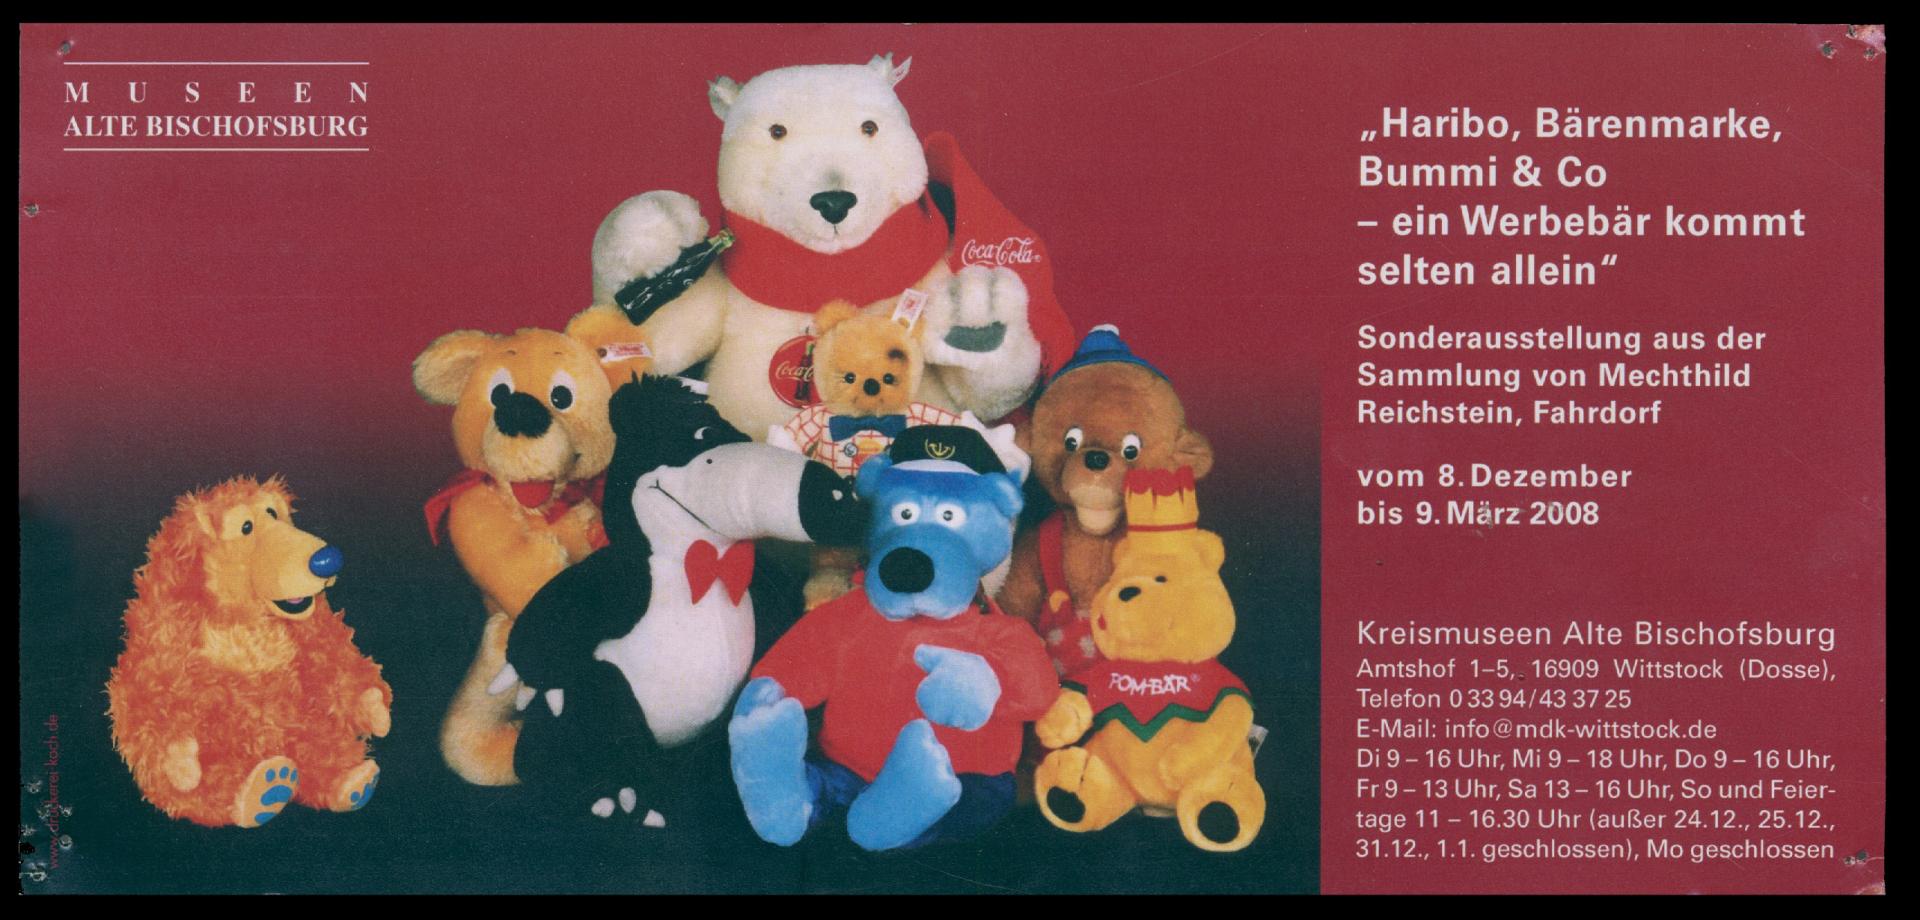 1994 Mein Freund der Bär  Teddybären, Privatsammlung M. Reichstein